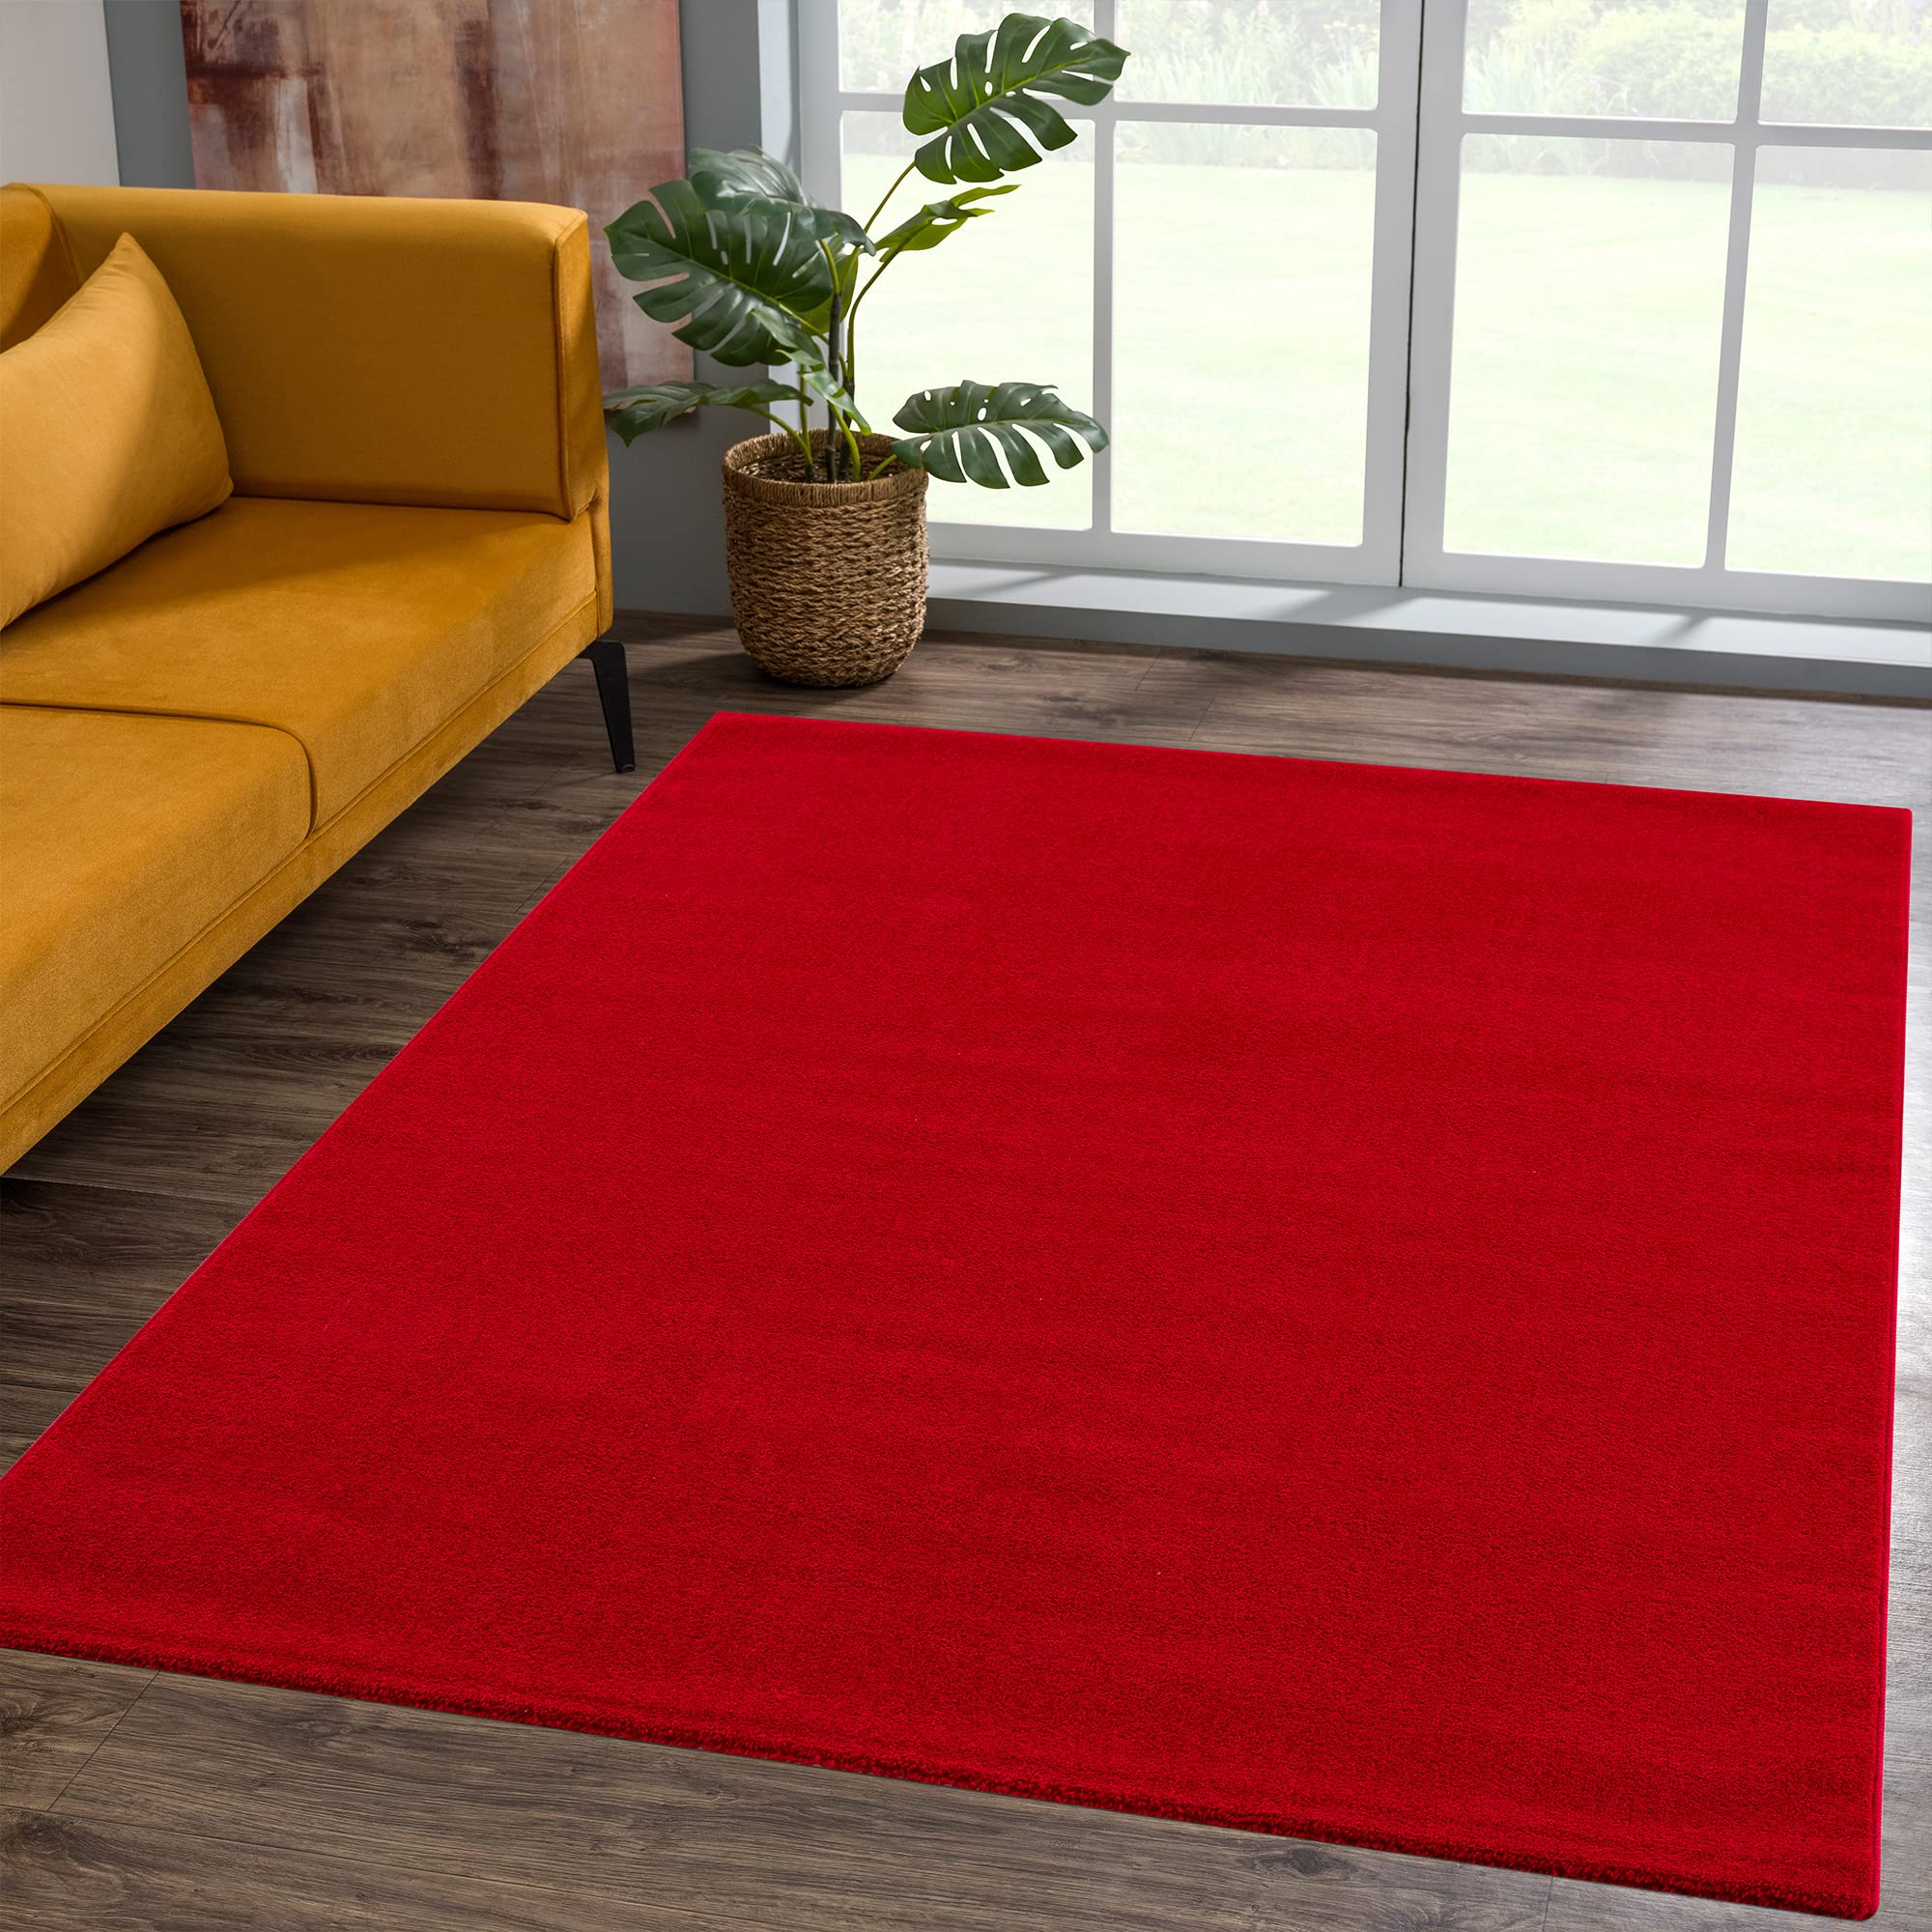 SANAT Kurzflor Teppich Wohnzimmer - Uni Modern Teppiche fürs Schlafzimmer, Arbeitszimmer, Büro, Flur, Kinderzimmer und Küche - Rot, 160 x 230 cm